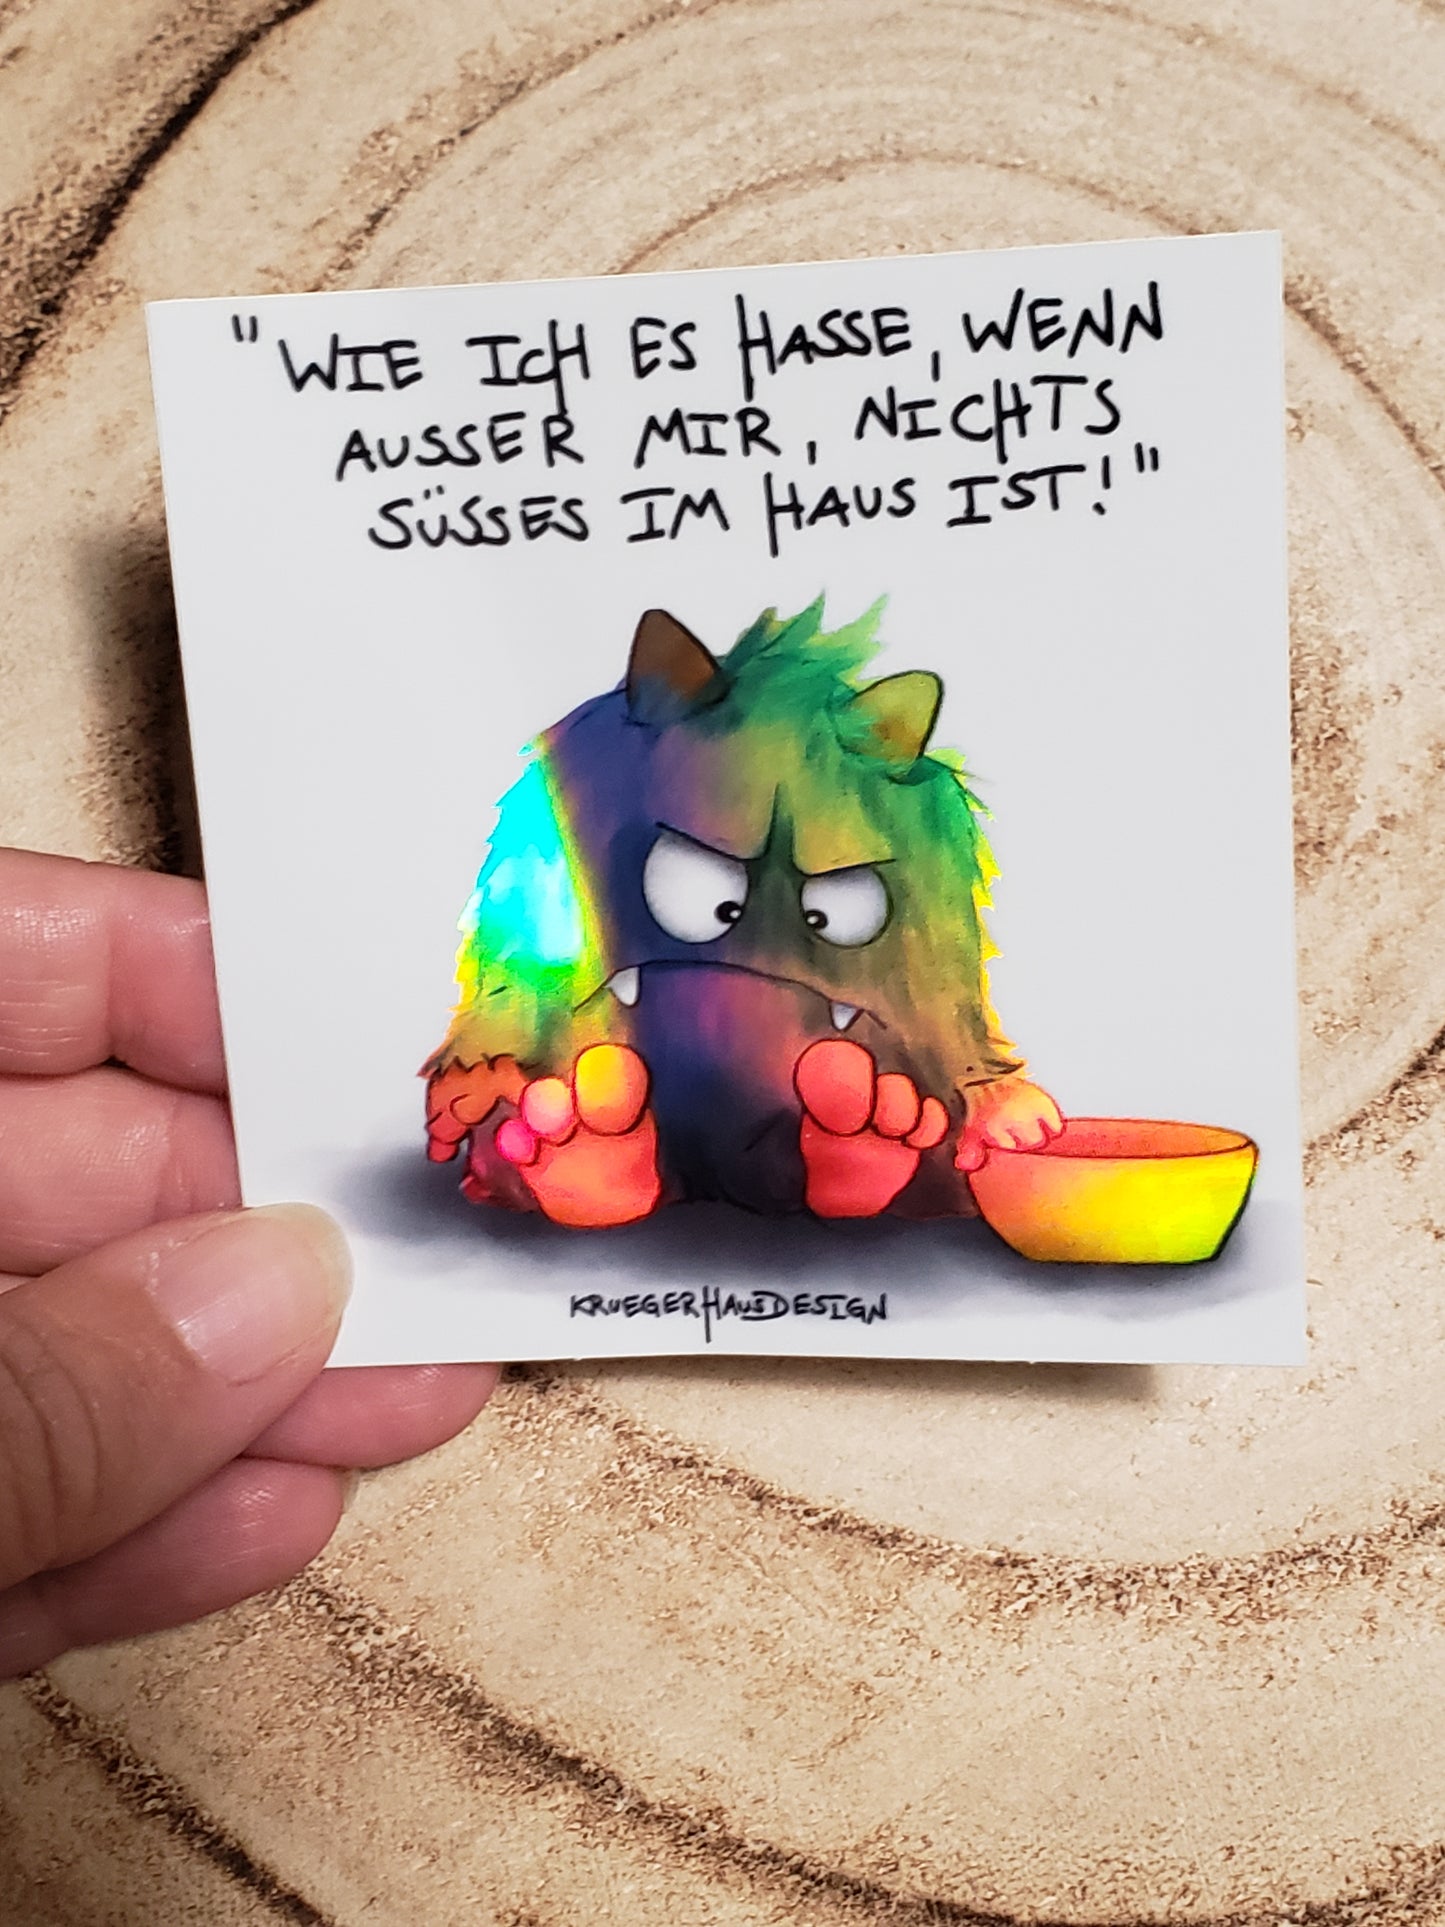 Sticker Hologram Kruegerhausdesign mit Monster und Spruch "Wie ich es hasse..."